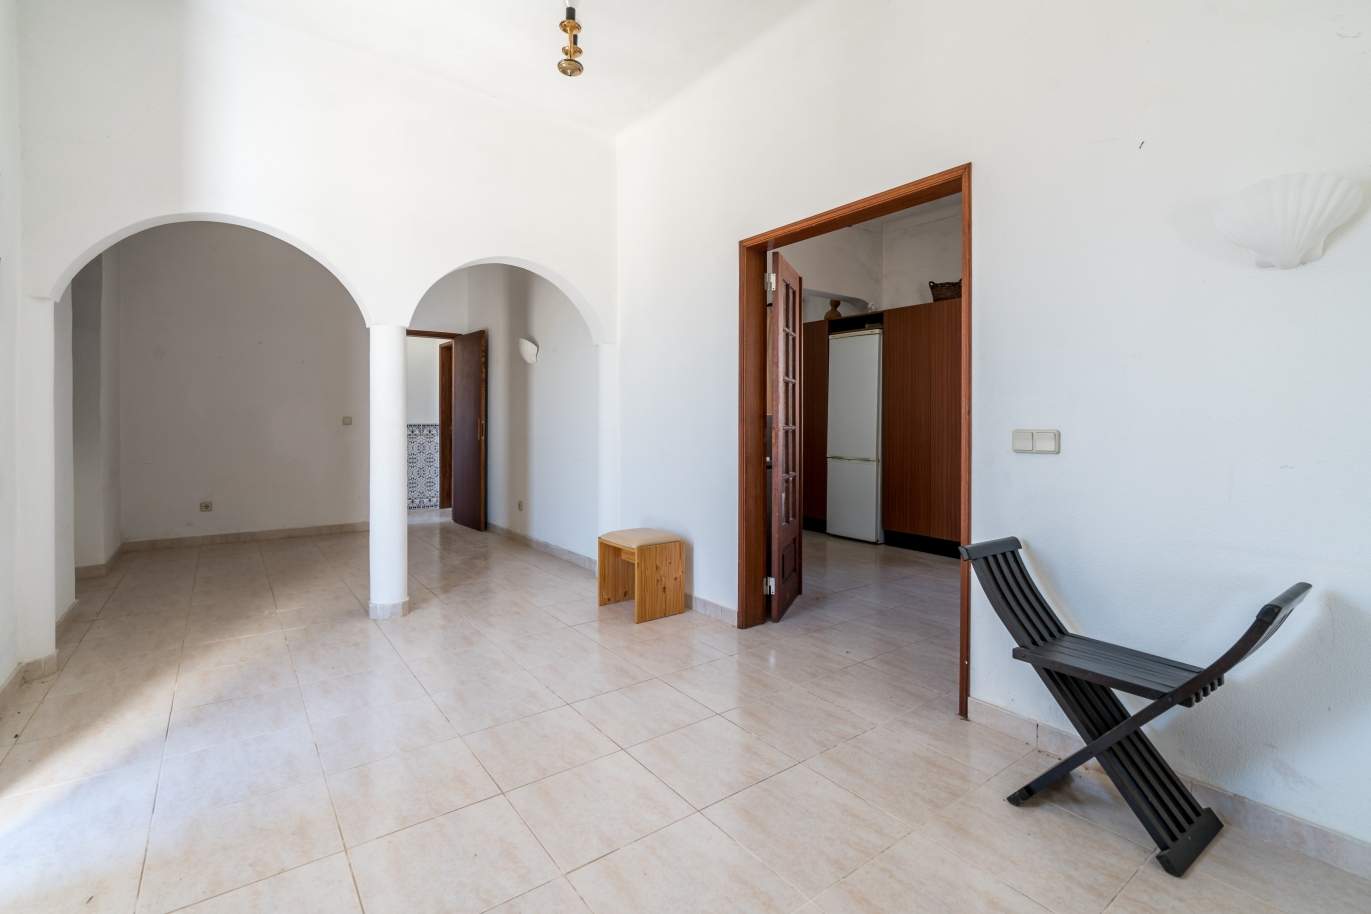 Sale of property in Alcantarilha, Silves, Algarve, Portugal_105697